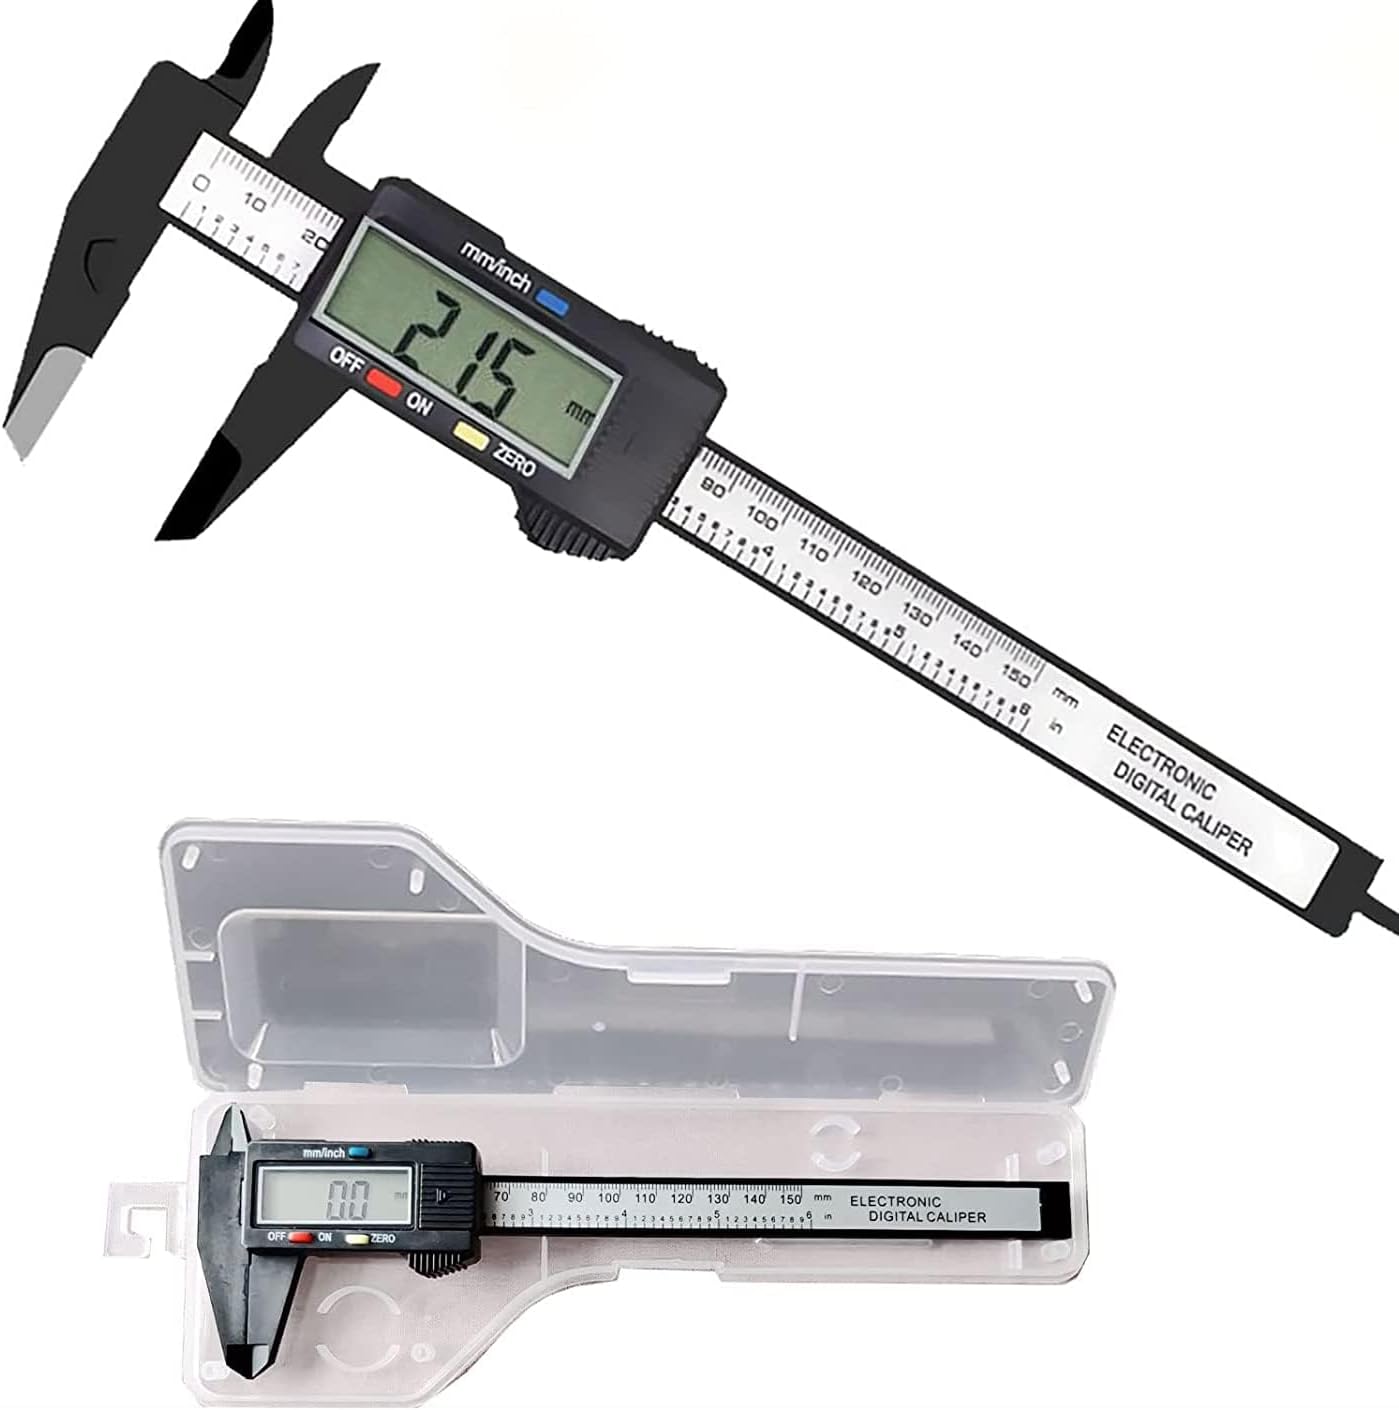  digital vernier calipers 150mm high precision caliper micrometer measurement tool precise work DIY large . measurement tool range 0-1mm in the case 